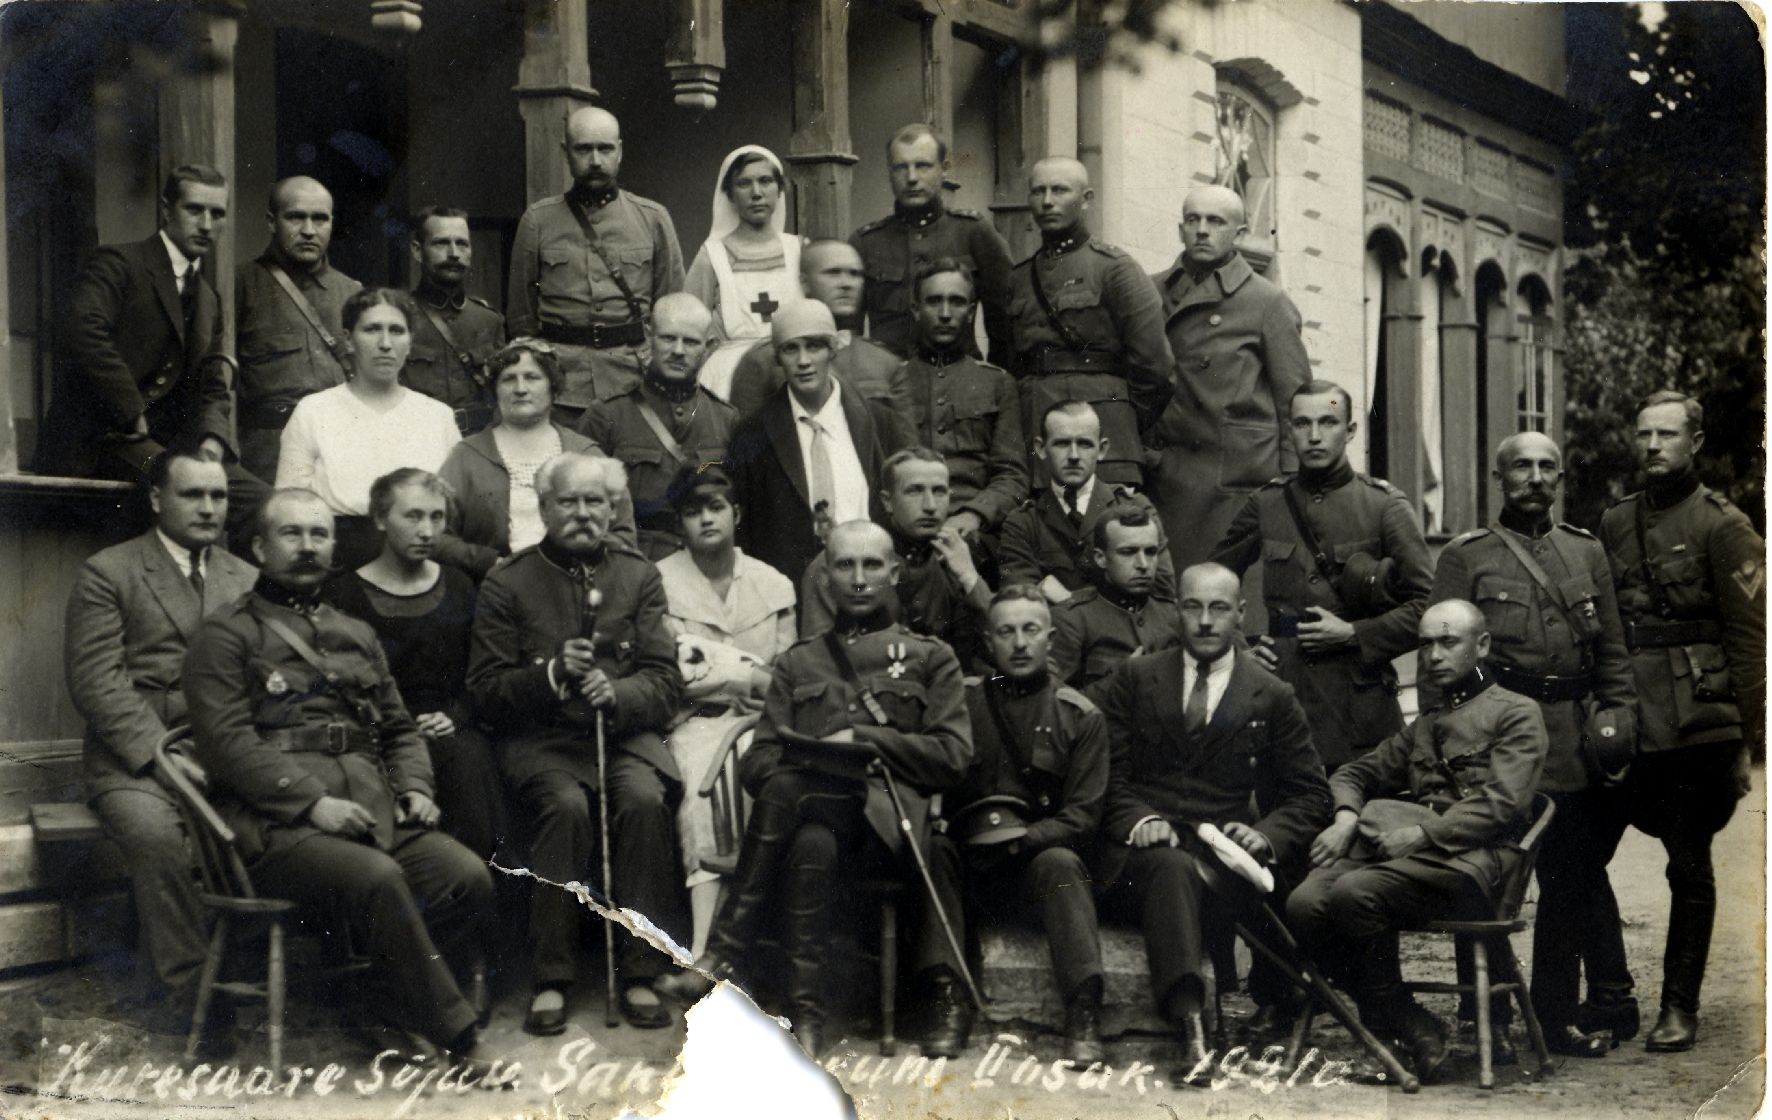 Kuressaare Sõjaväe Sanatooriumi II osakonna patsiendid ja personal.